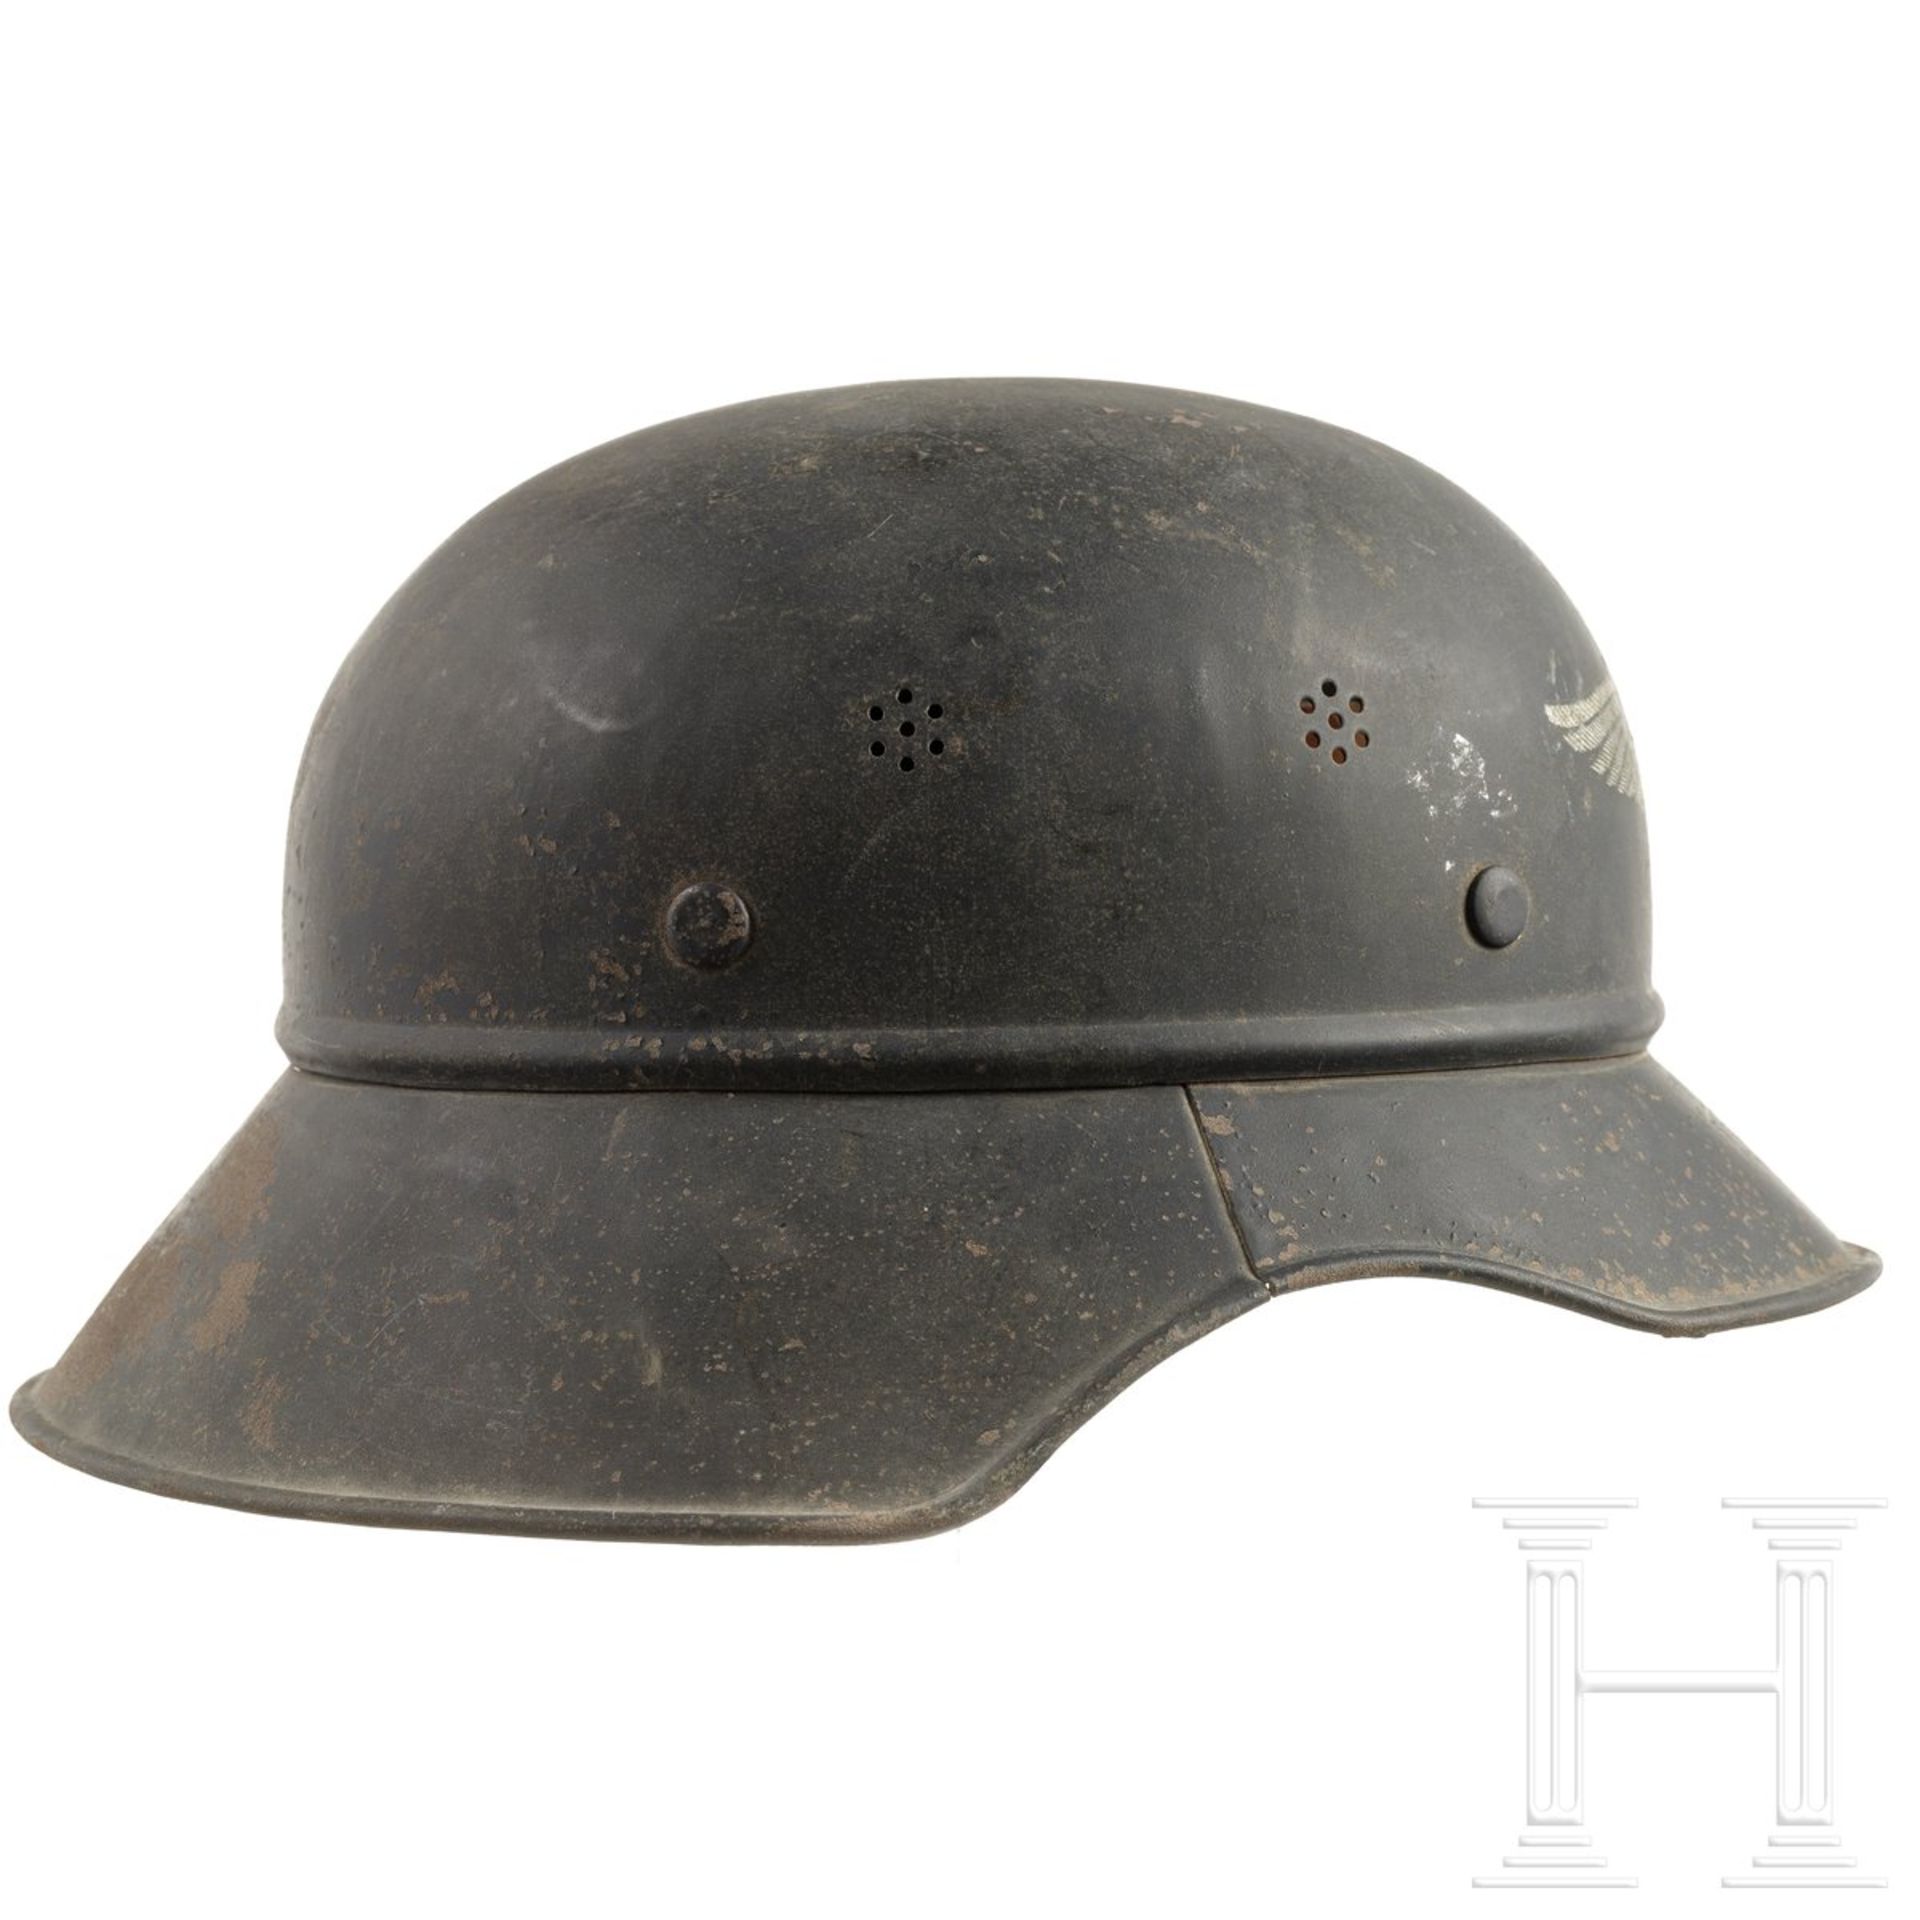 Stahlhelm "Gladiator" für Luftschutz, deutsch, um 1940 - Bild 2 aus 5